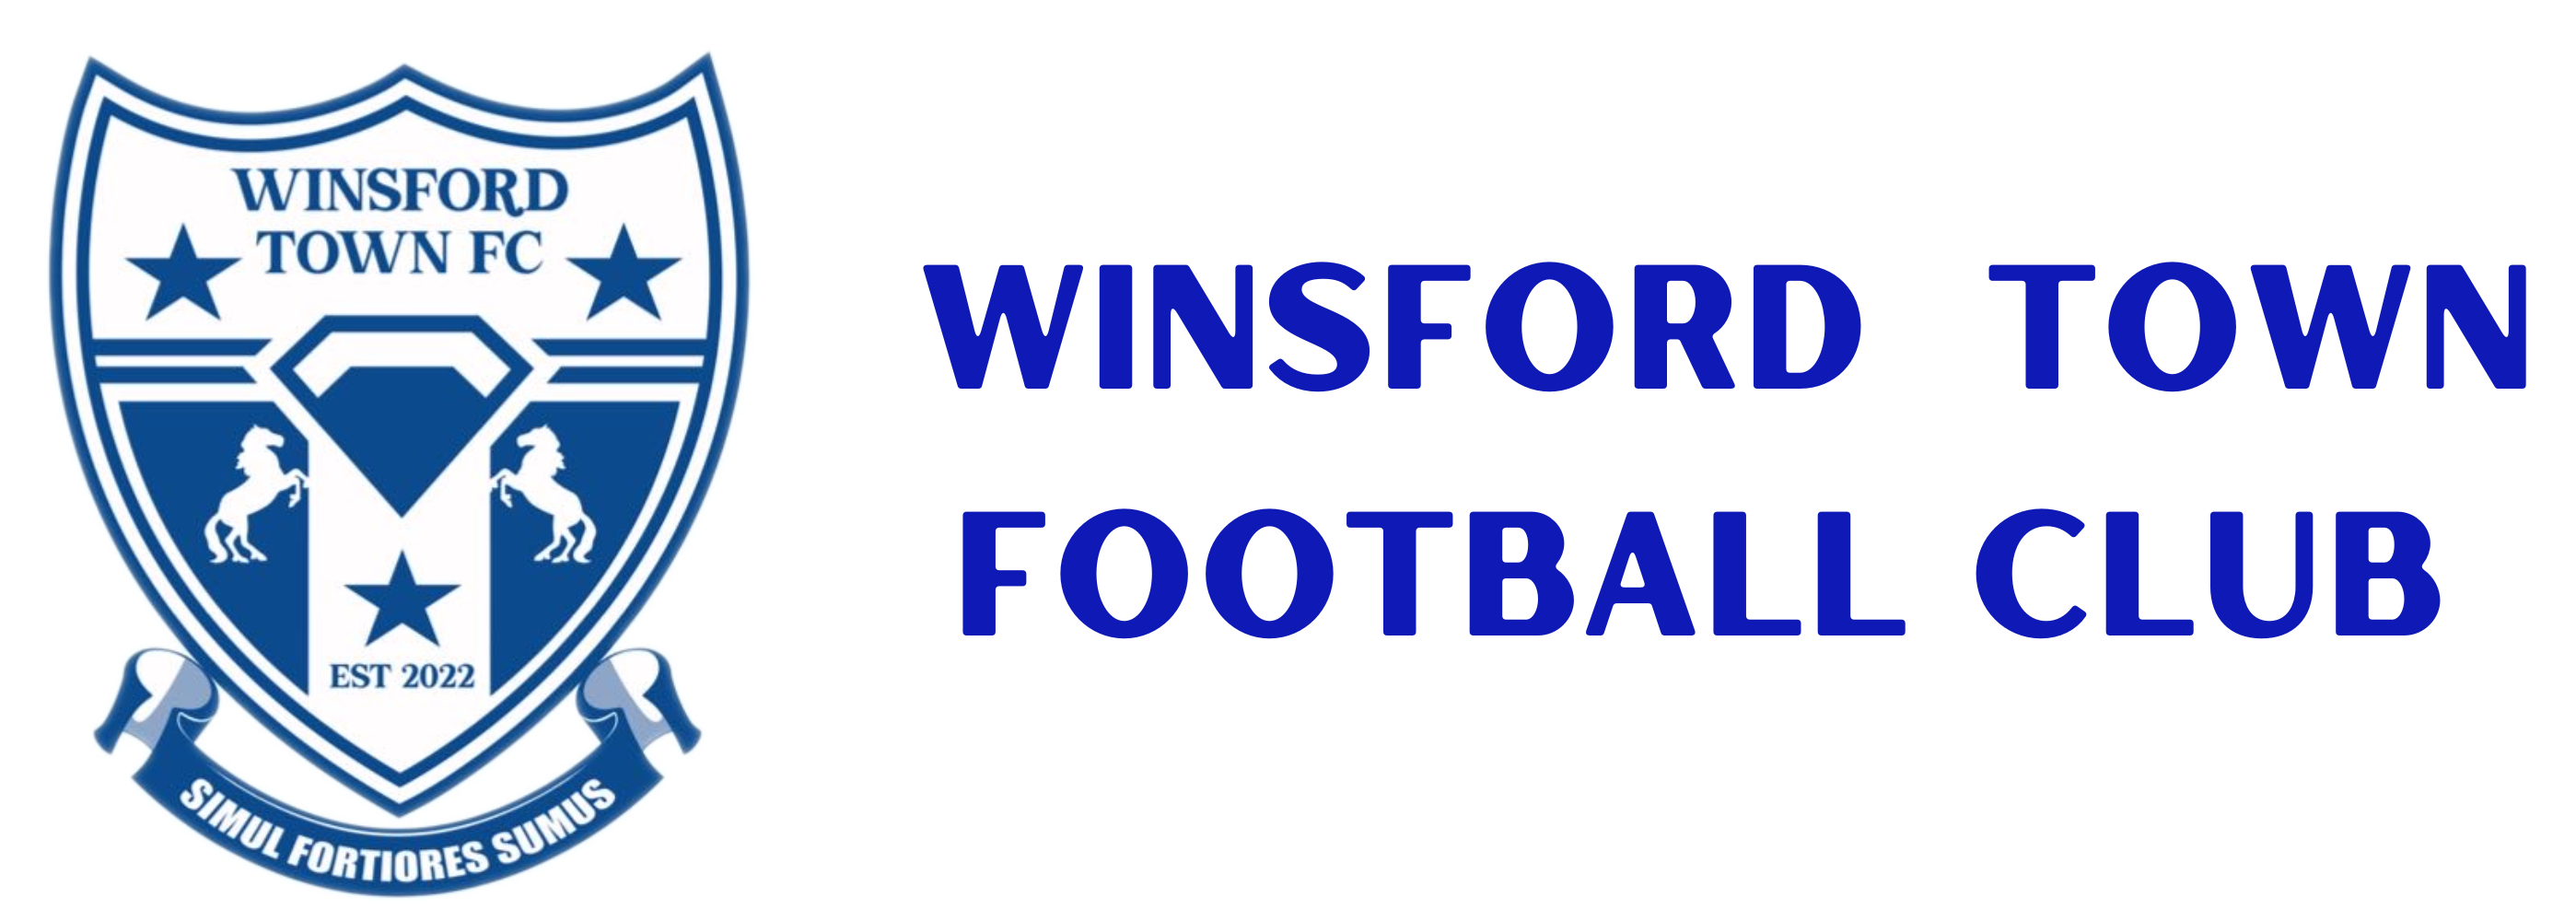 Winsford Town FC